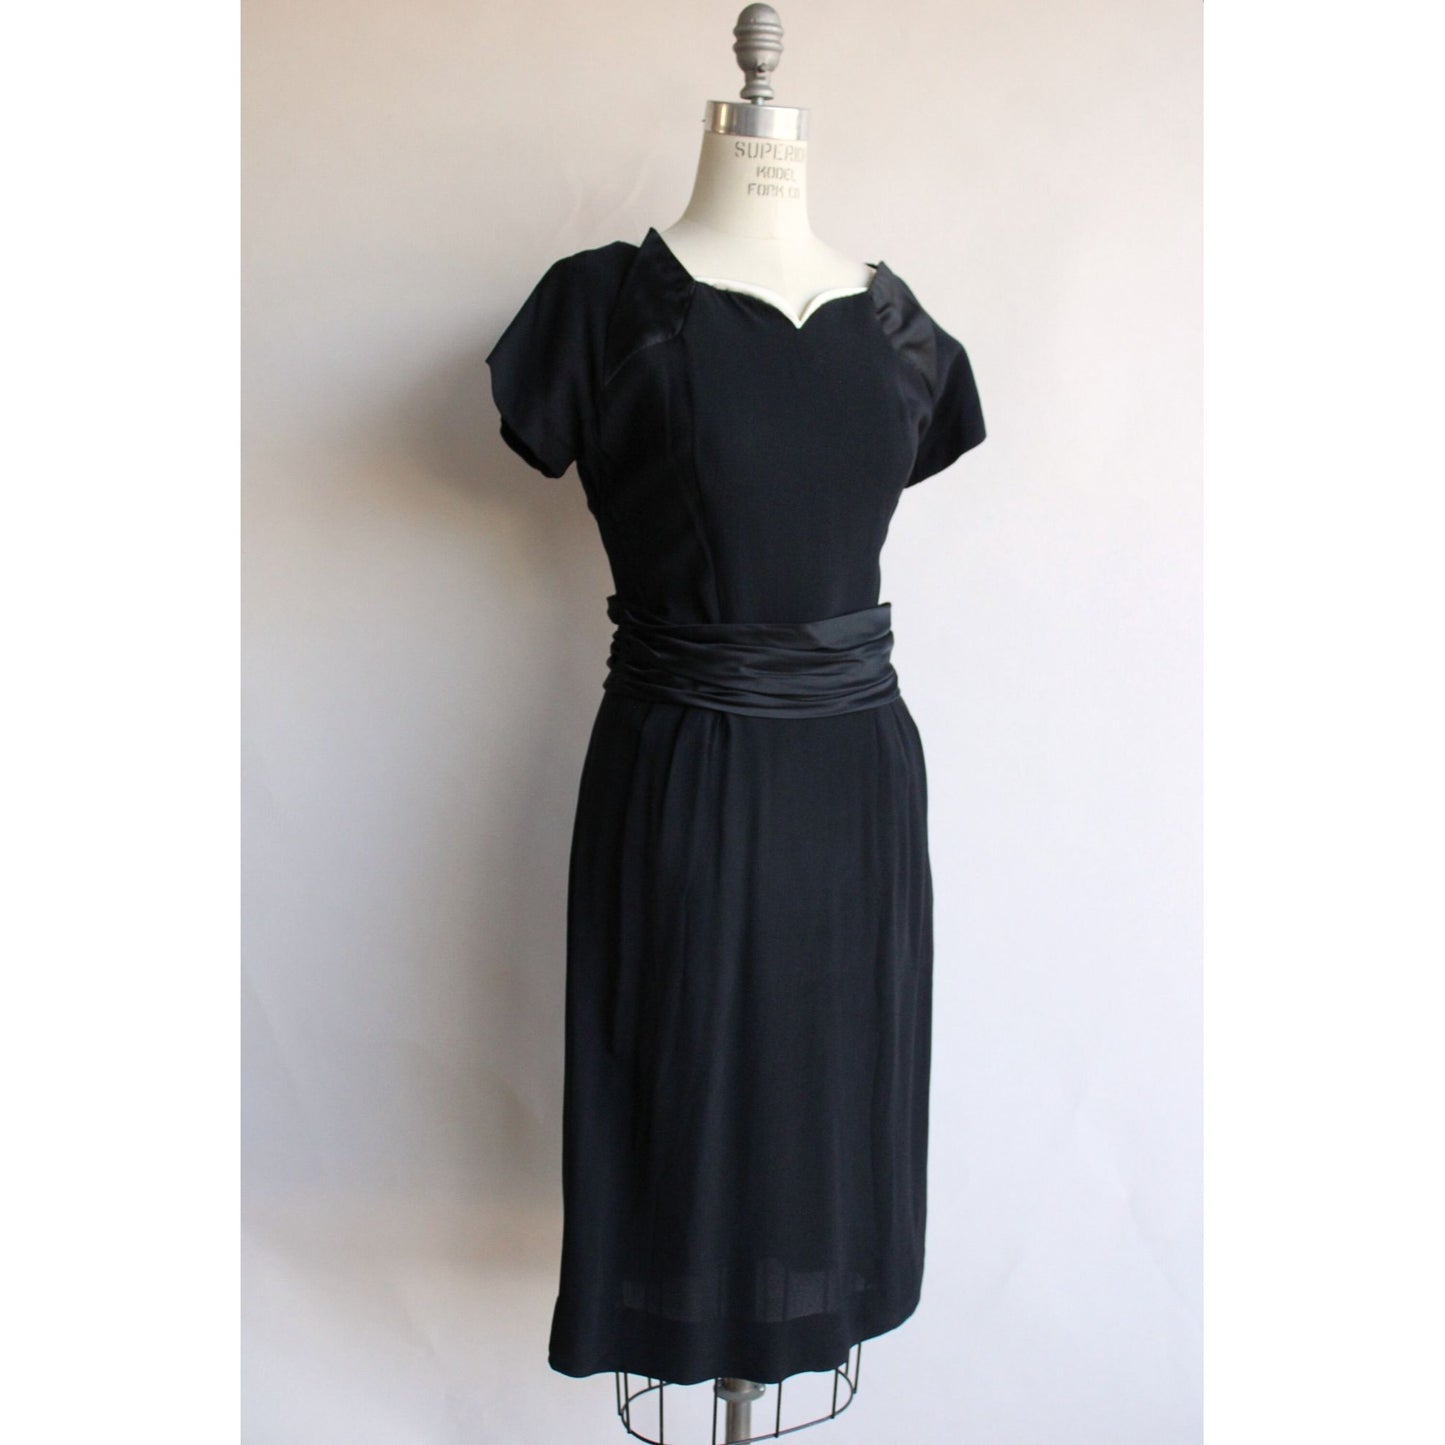 Vintage 1950s  Black Rayon Dress With Cummerbund Belt and Sweetheart Neckline